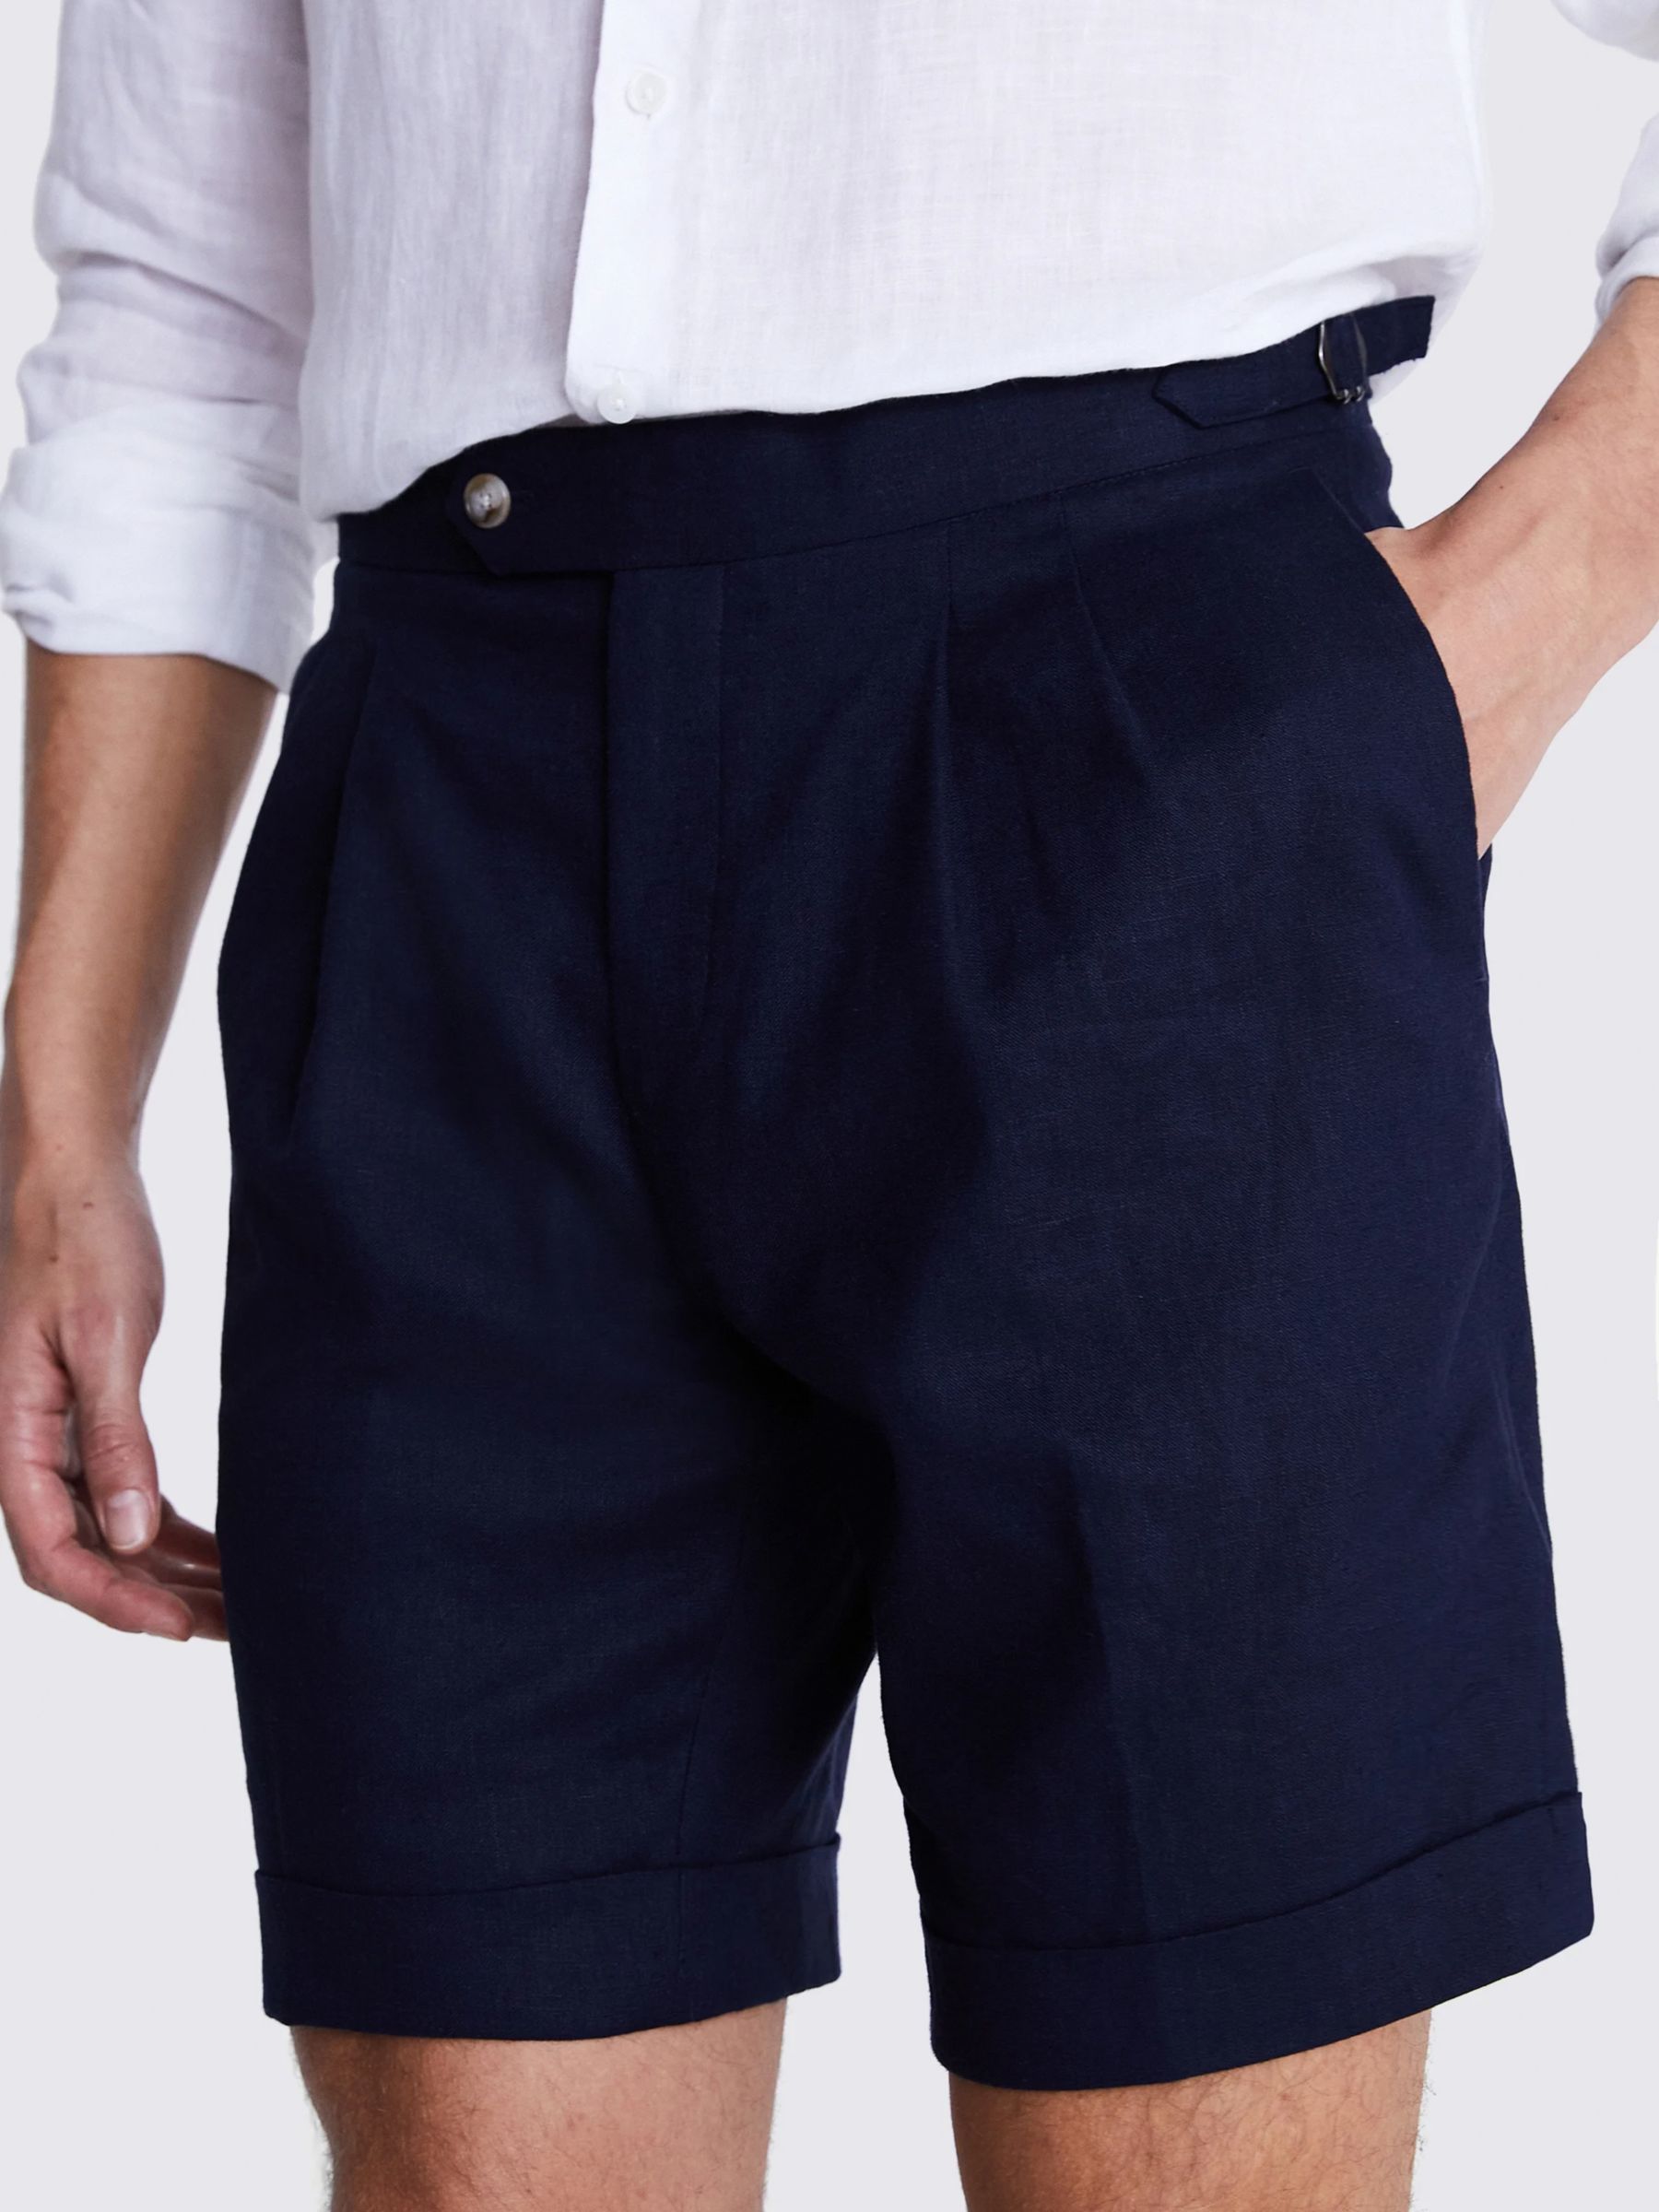 Moss Matte Linen Blend Side Adjustable Shorts, Navy, XS